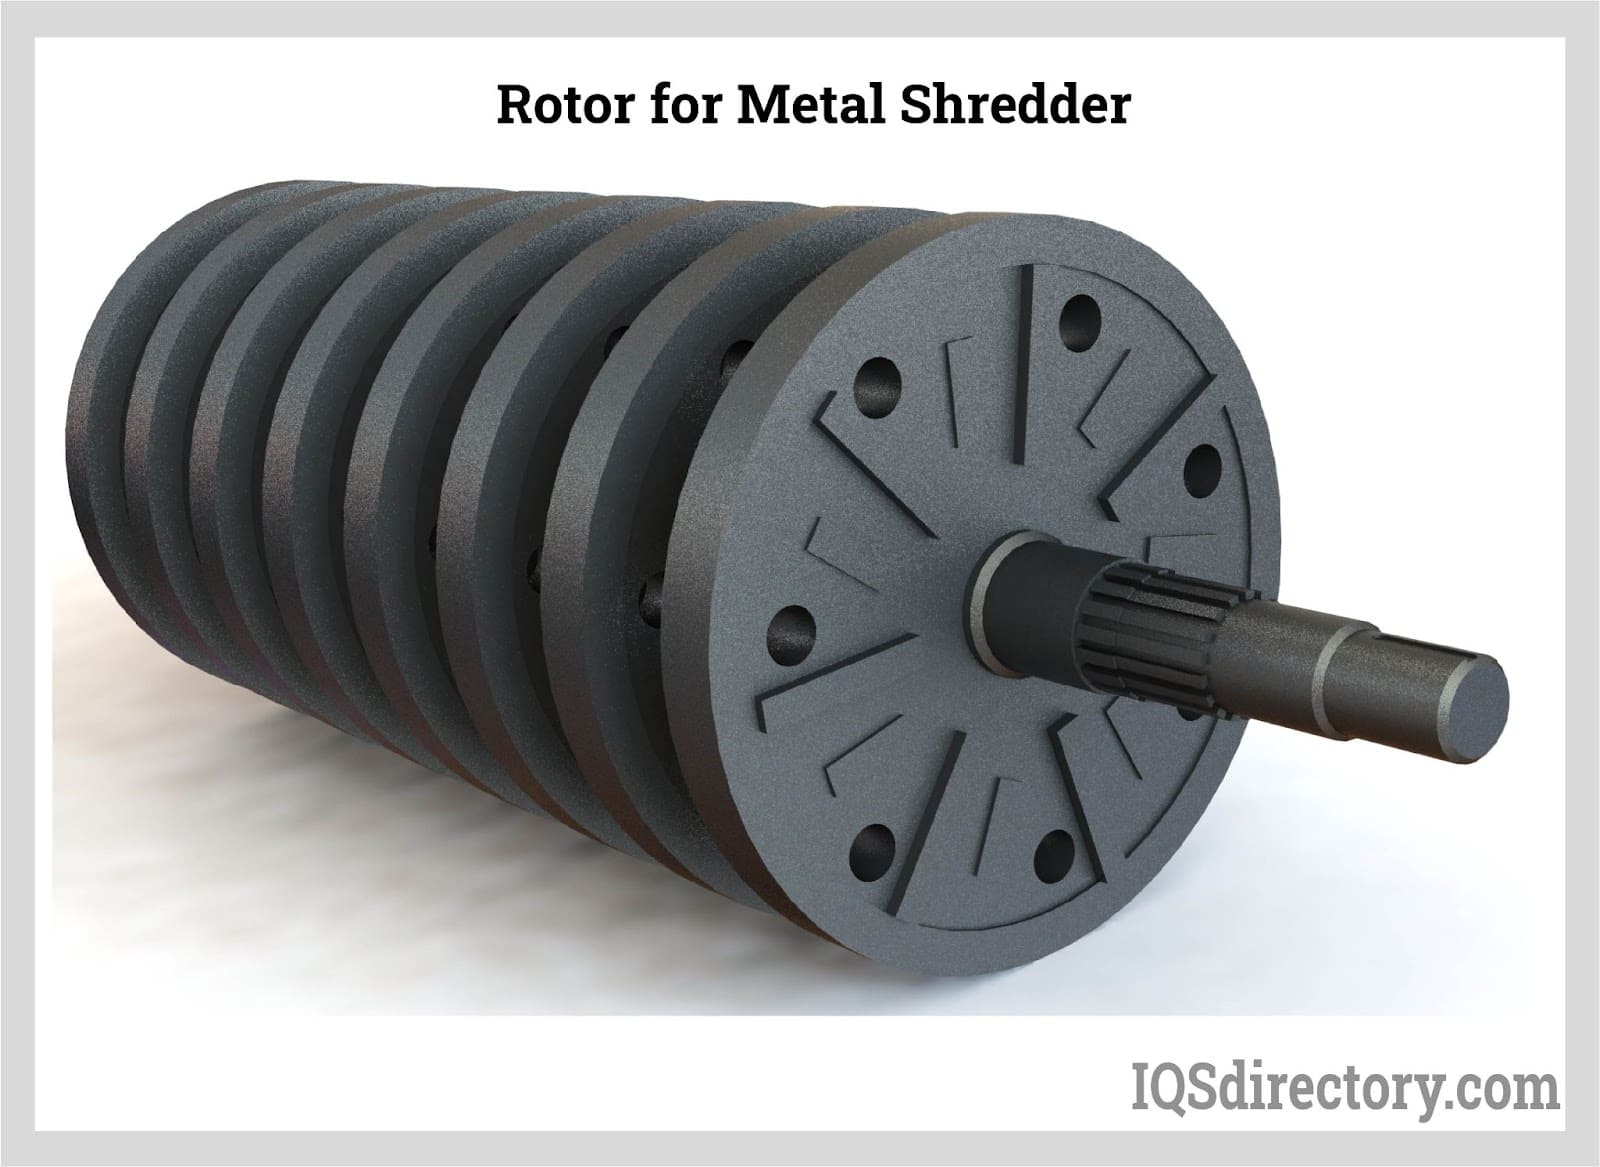 Rotor for Metal Shredder